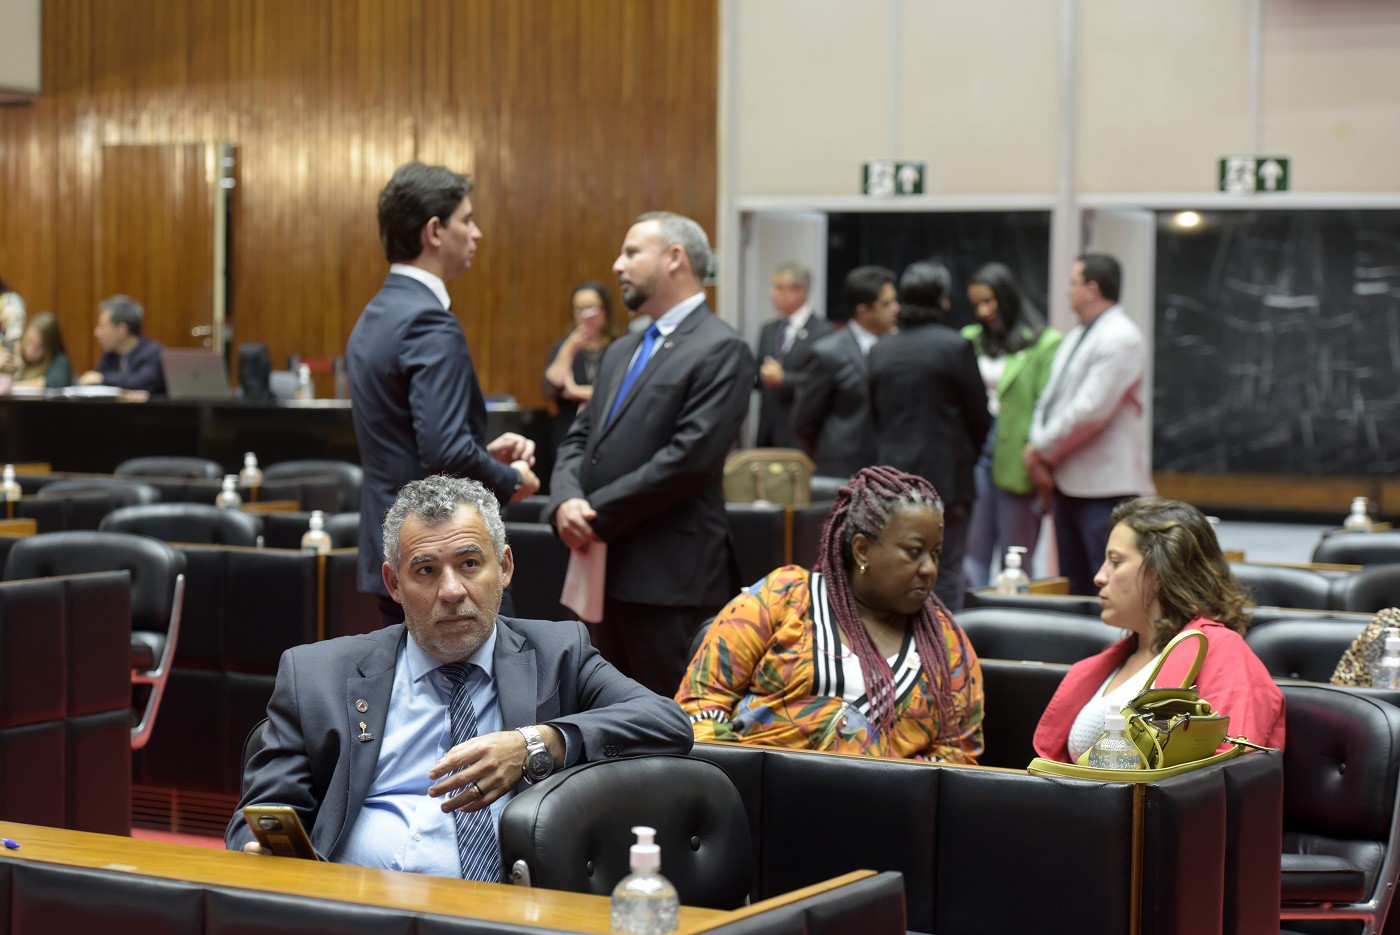 Politiza aborda a sobrecarga de trabalho da mulher - Assembleia Legislativa  de Minas Gerais